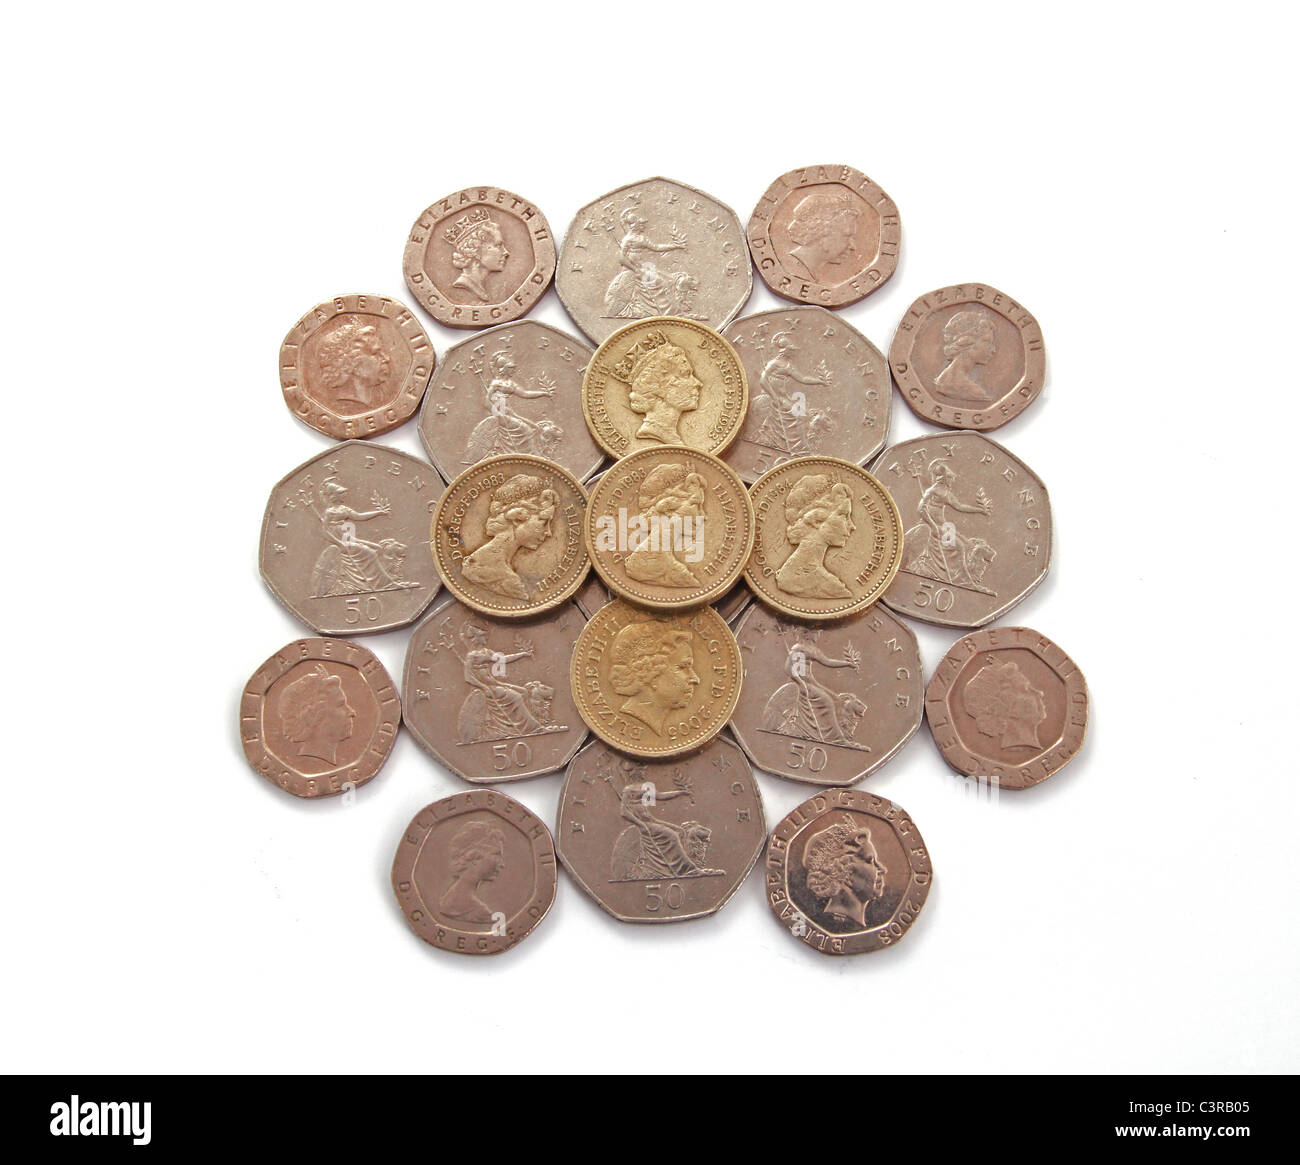 Britisch, UK, Münzen auf einem weißen Hintergrund. Stockfoto